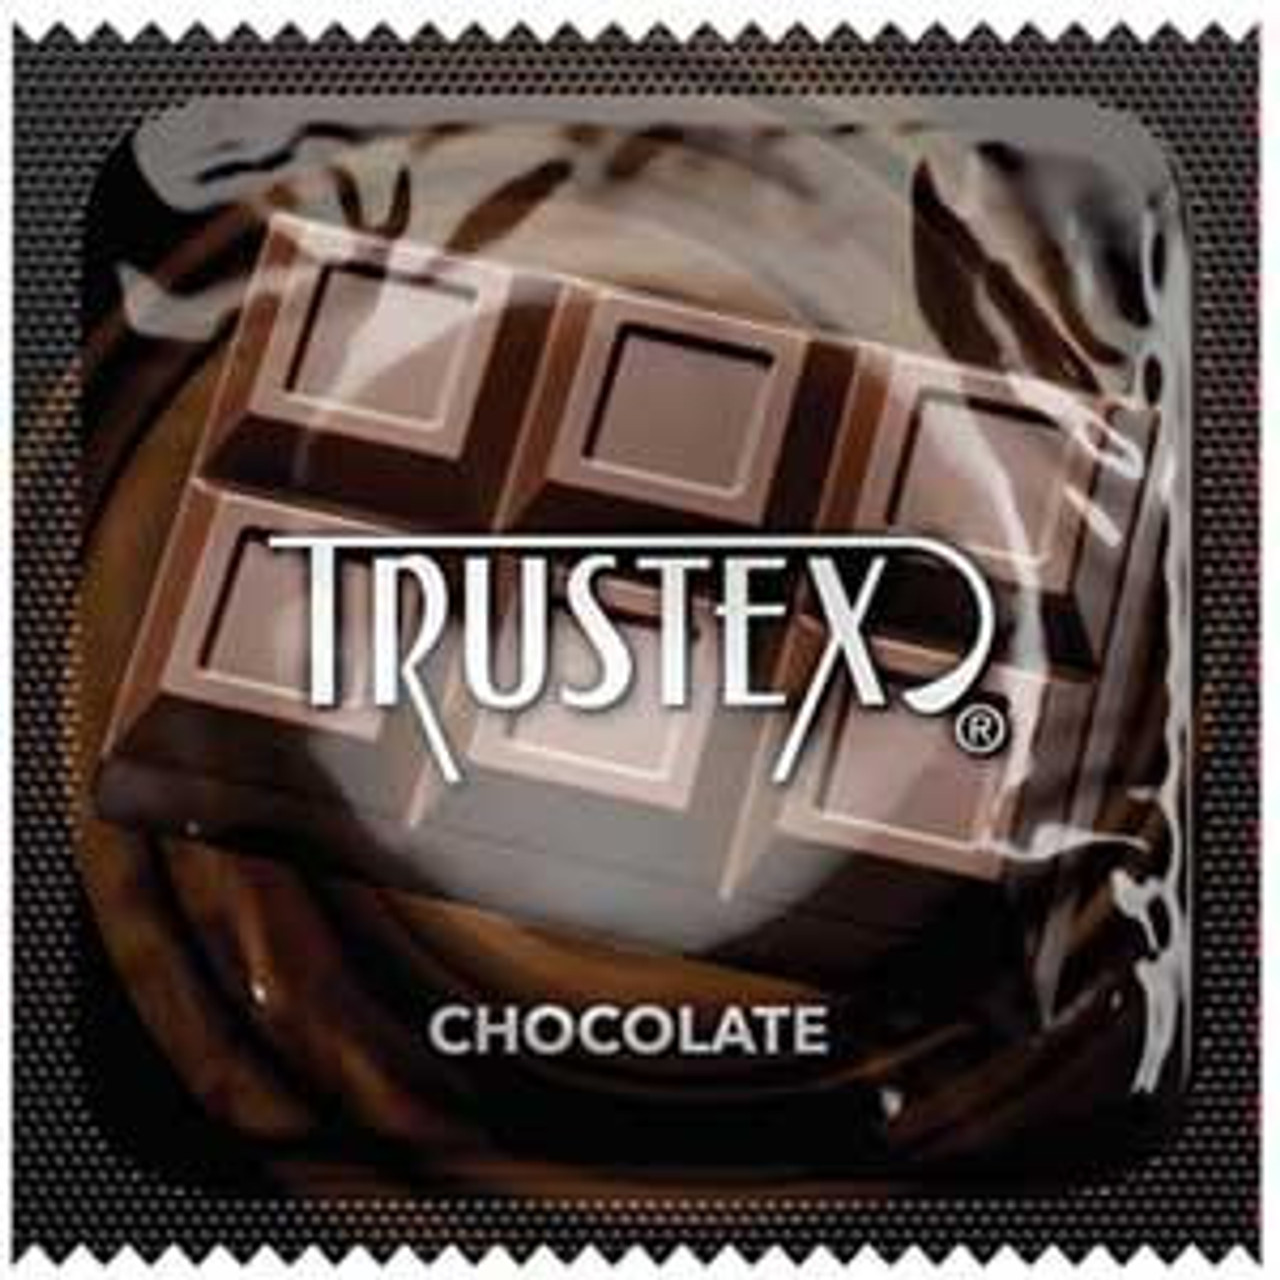 Trustex Chocolate Flavored Condoms | - Buy Trustex Condoms Online at CondomDepot.com